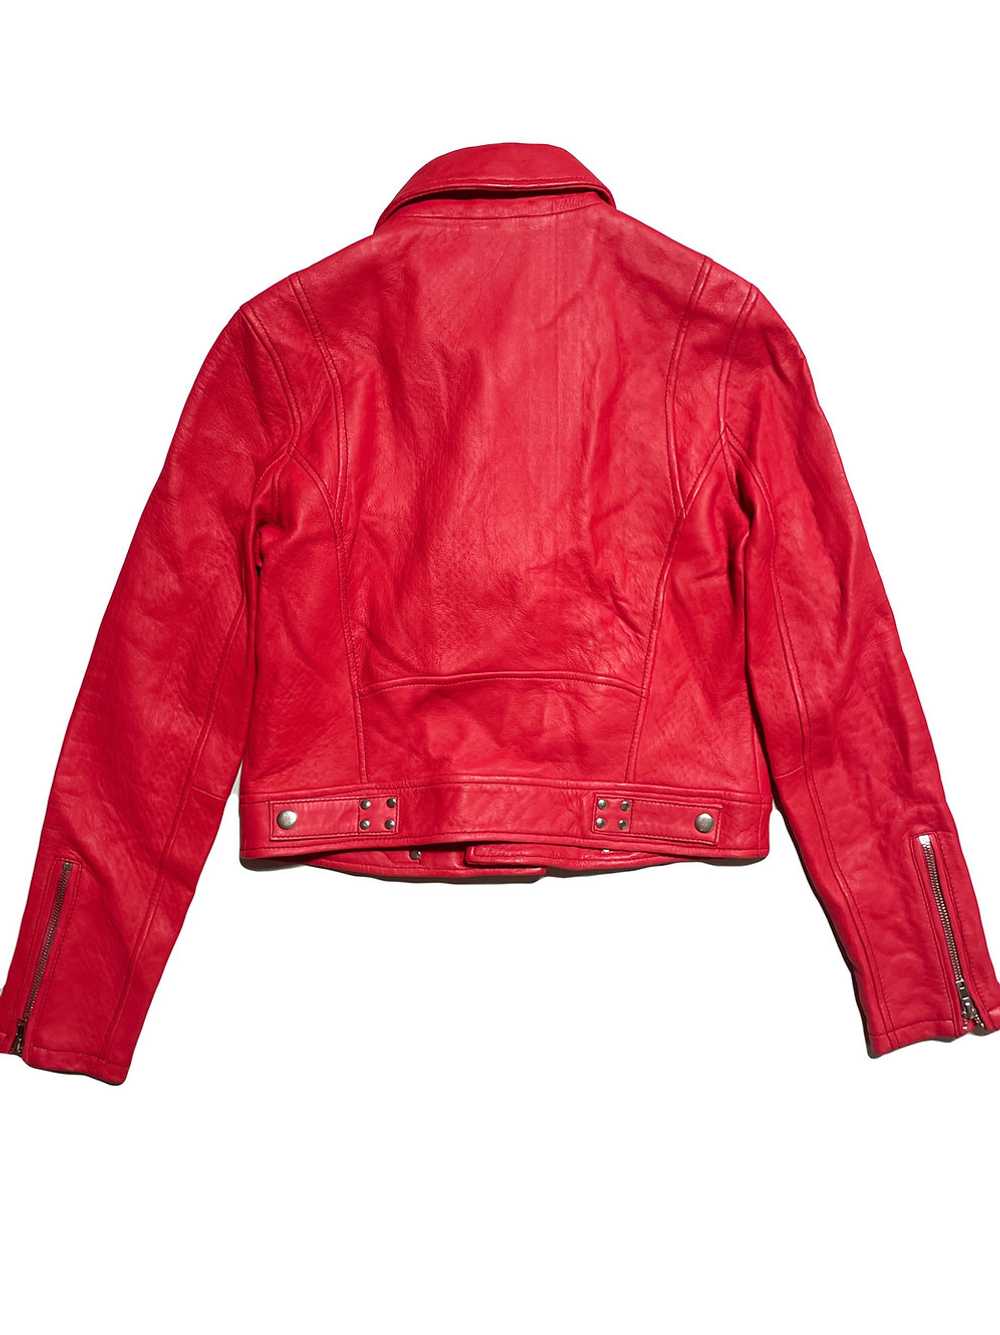 Maje Bright Red Leather Jacket UK 12 - image 2